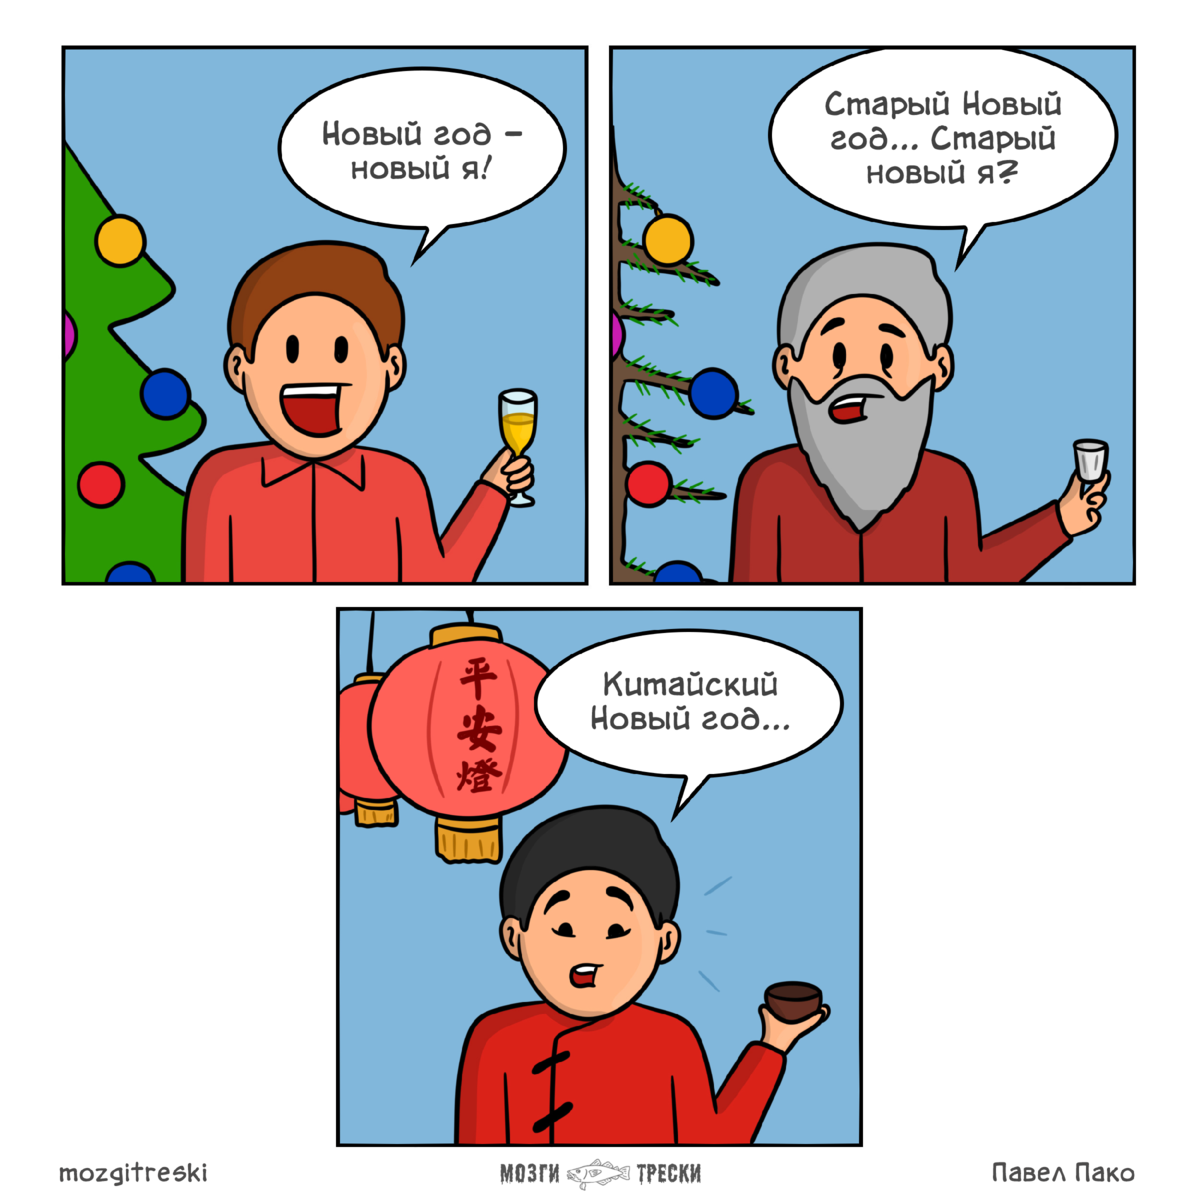 Послепраздничный длинных выходных и попытках вернуться к работе, юмор  7 смешных комиксов о новогодних обещаниях.